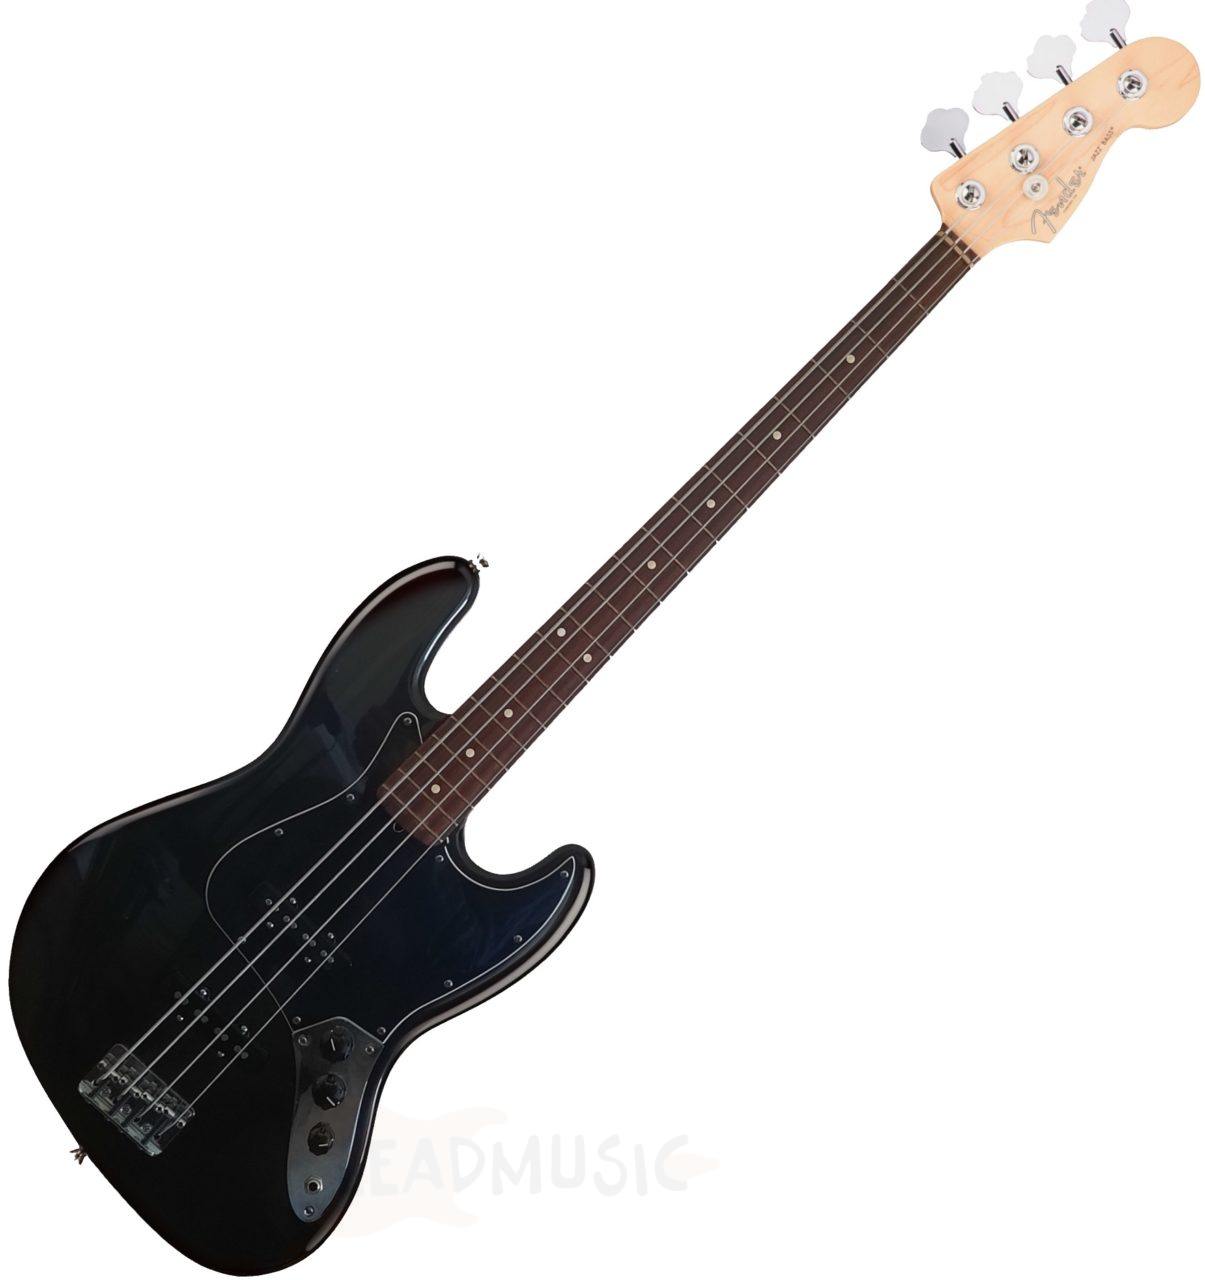 1997 Fender American Standard Jazz Bass